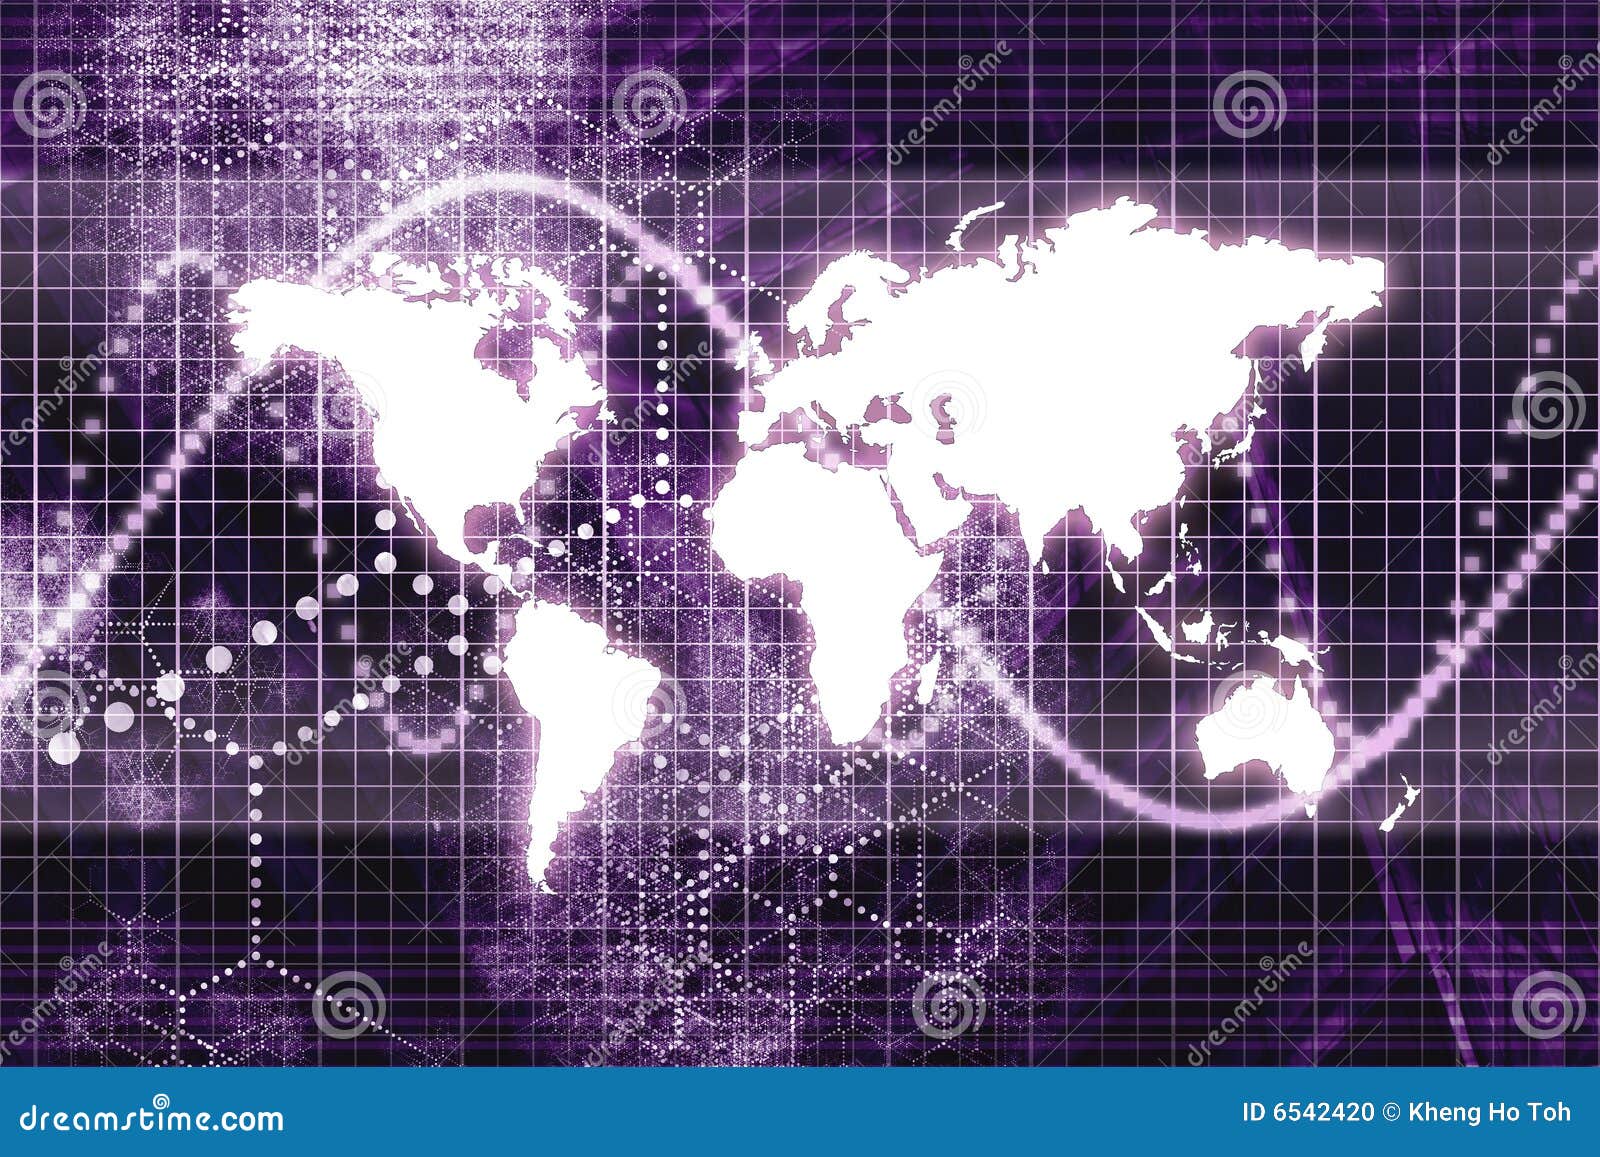 purple worldwide business communications